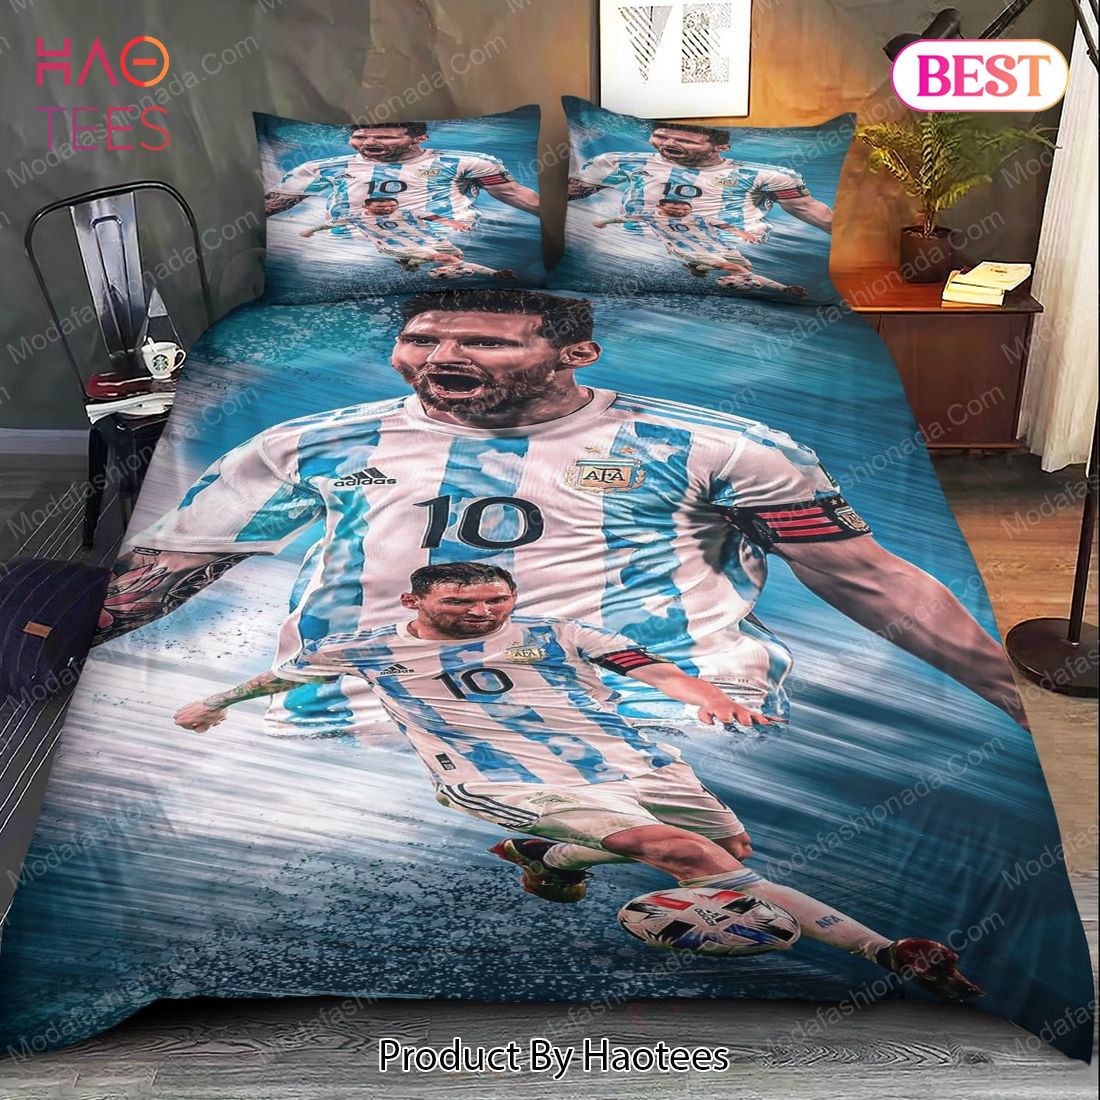 Buy Lionel Messi Argentina Bedding Sets 01 Bed Sets, Bedroom Sets, Comforter Sets, Duvet Cover, Bedspread